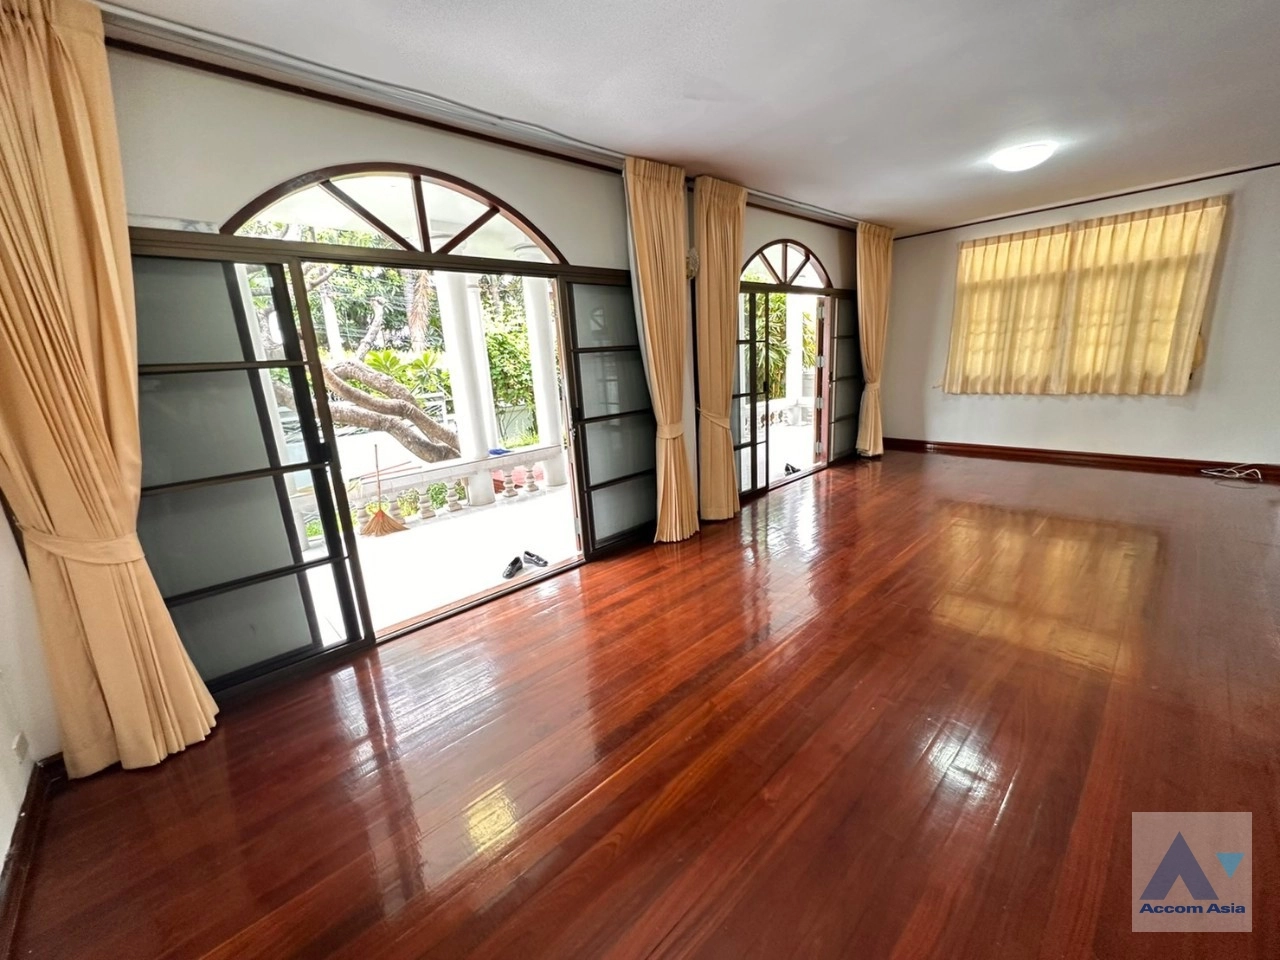  5 Bedrooms  House For Rent in Sathorn, Bangkok  near MRT Khlong Toei (AA35228)